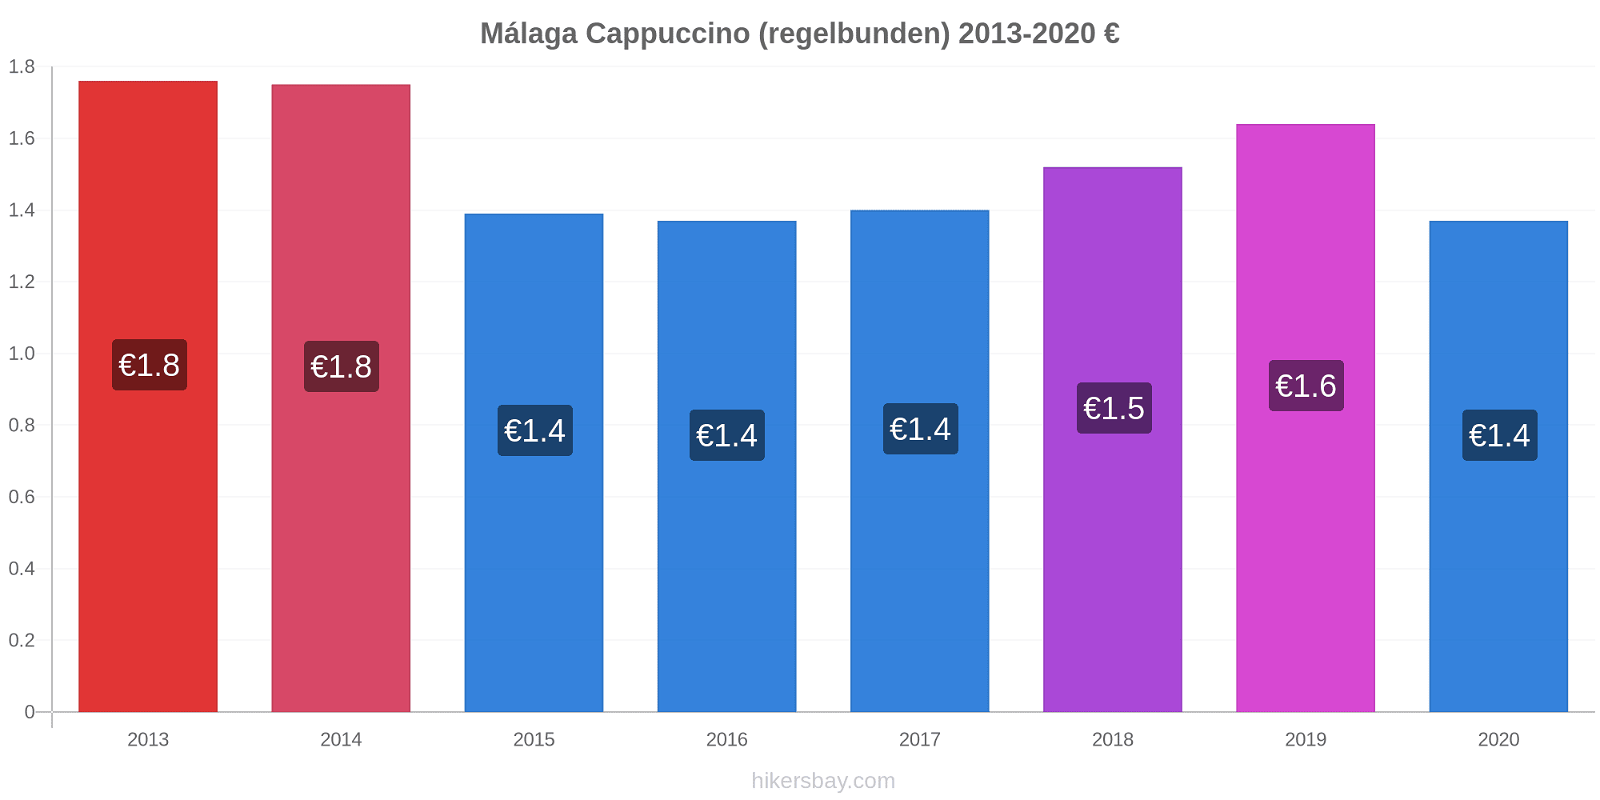 Málaga prisförändringar Cappuccino (regelbunden) hikersbay.com